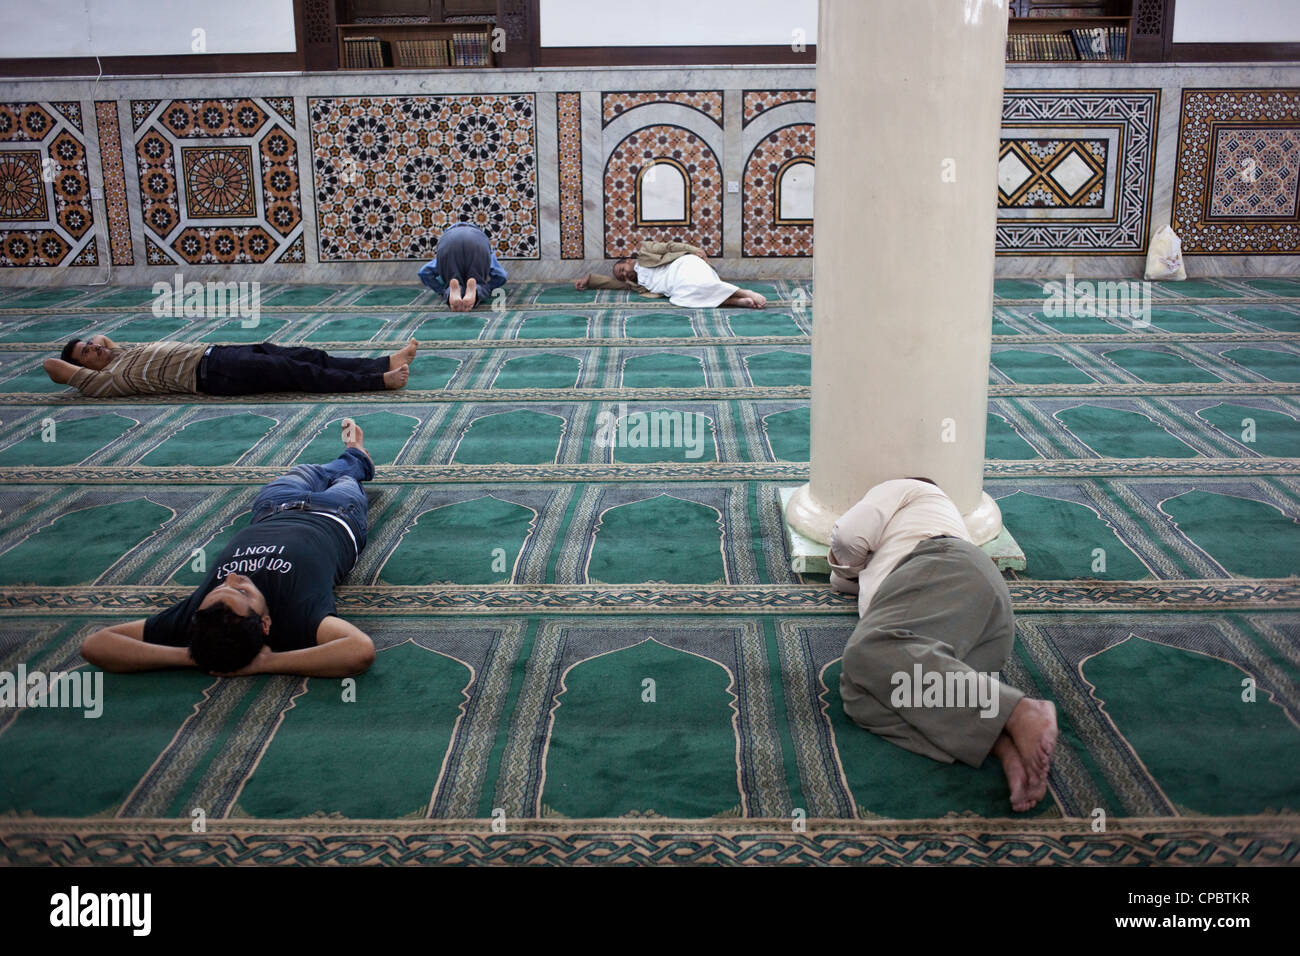 Interior of Al-Husseini Mosque ( the King Hussein Mosque) - the min mosque of the city, Amman, Jordan Stock Photo